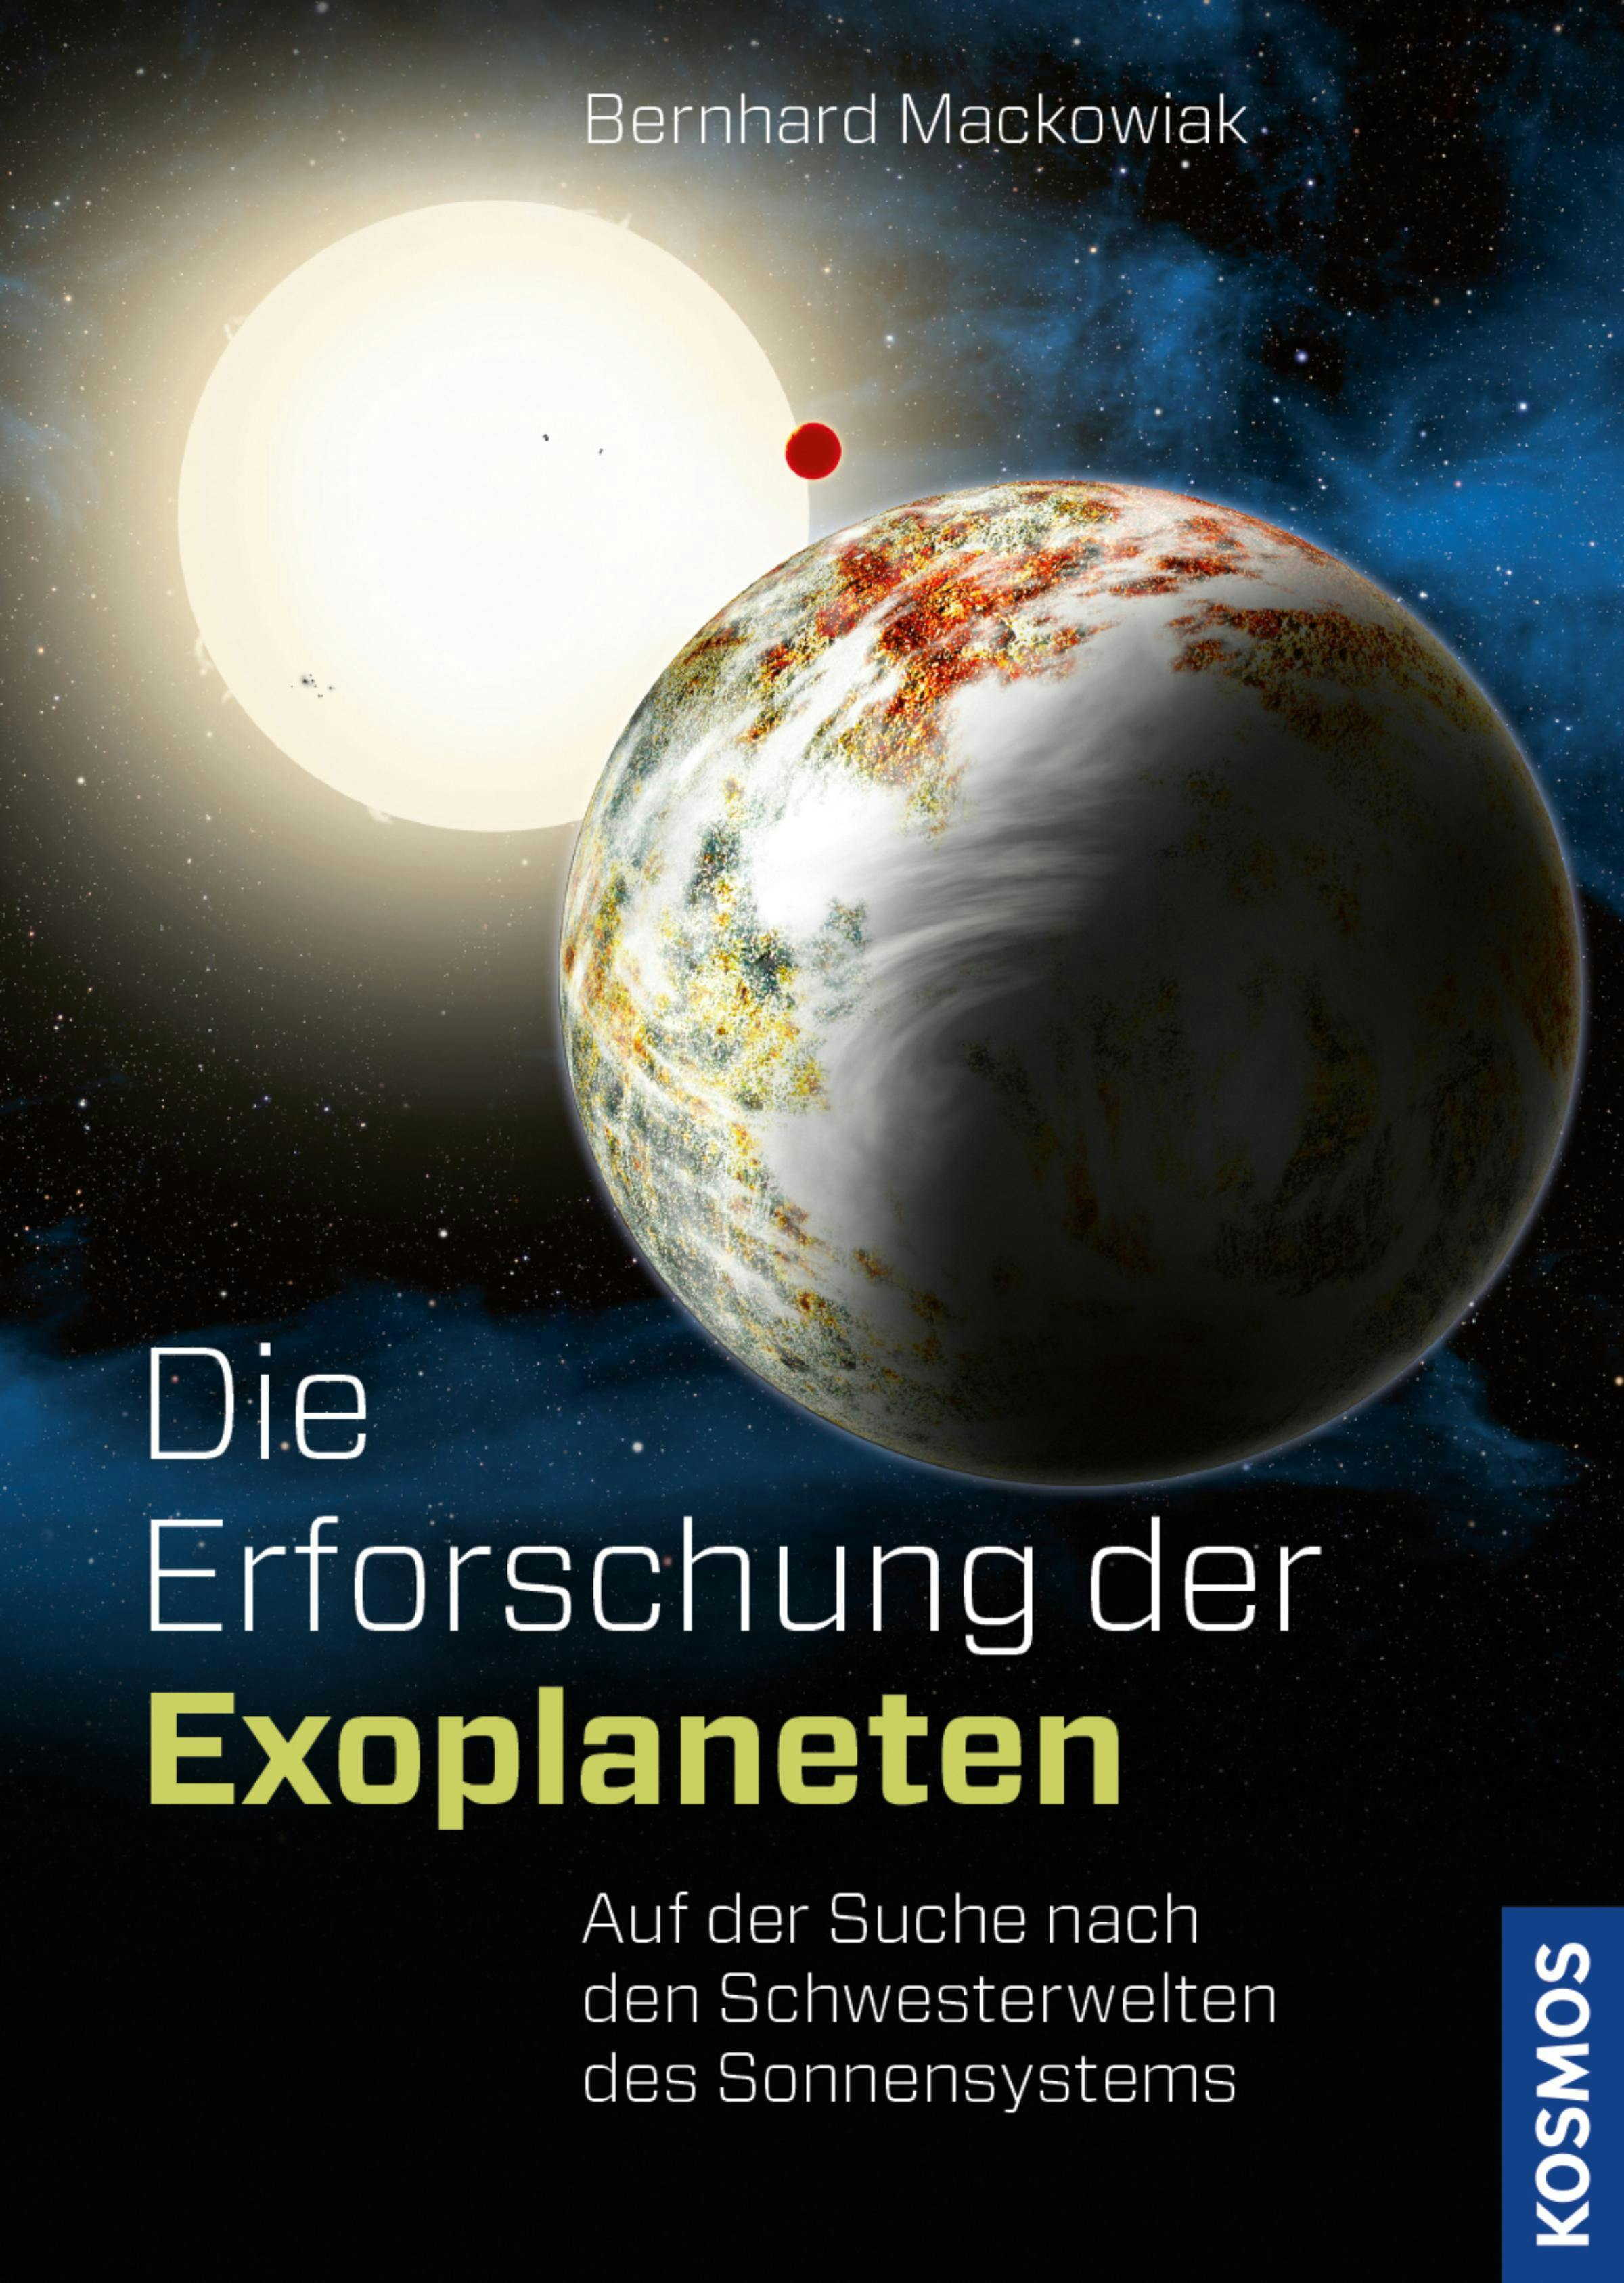 Die Erforschung der Exoplaneten - Bernhard Mackowiak